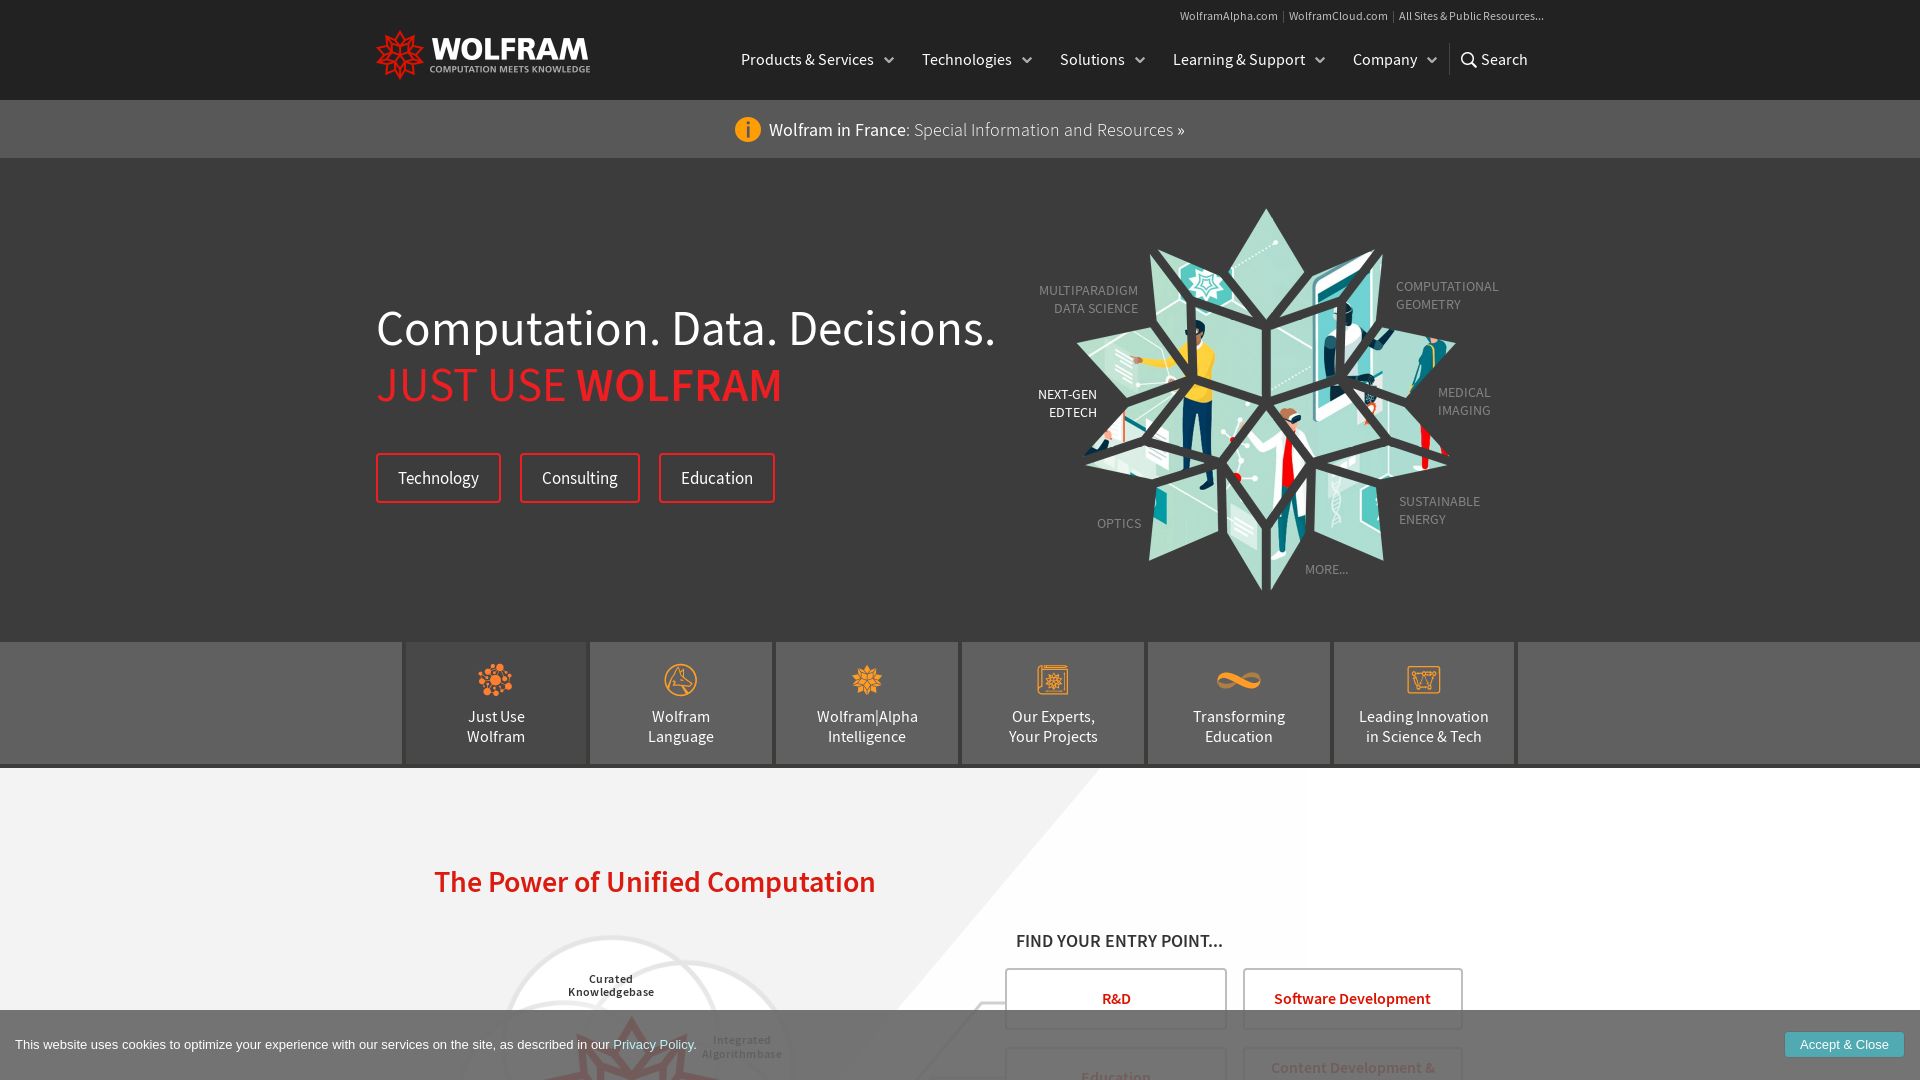 网站状态 wolfram.com 是  在线的